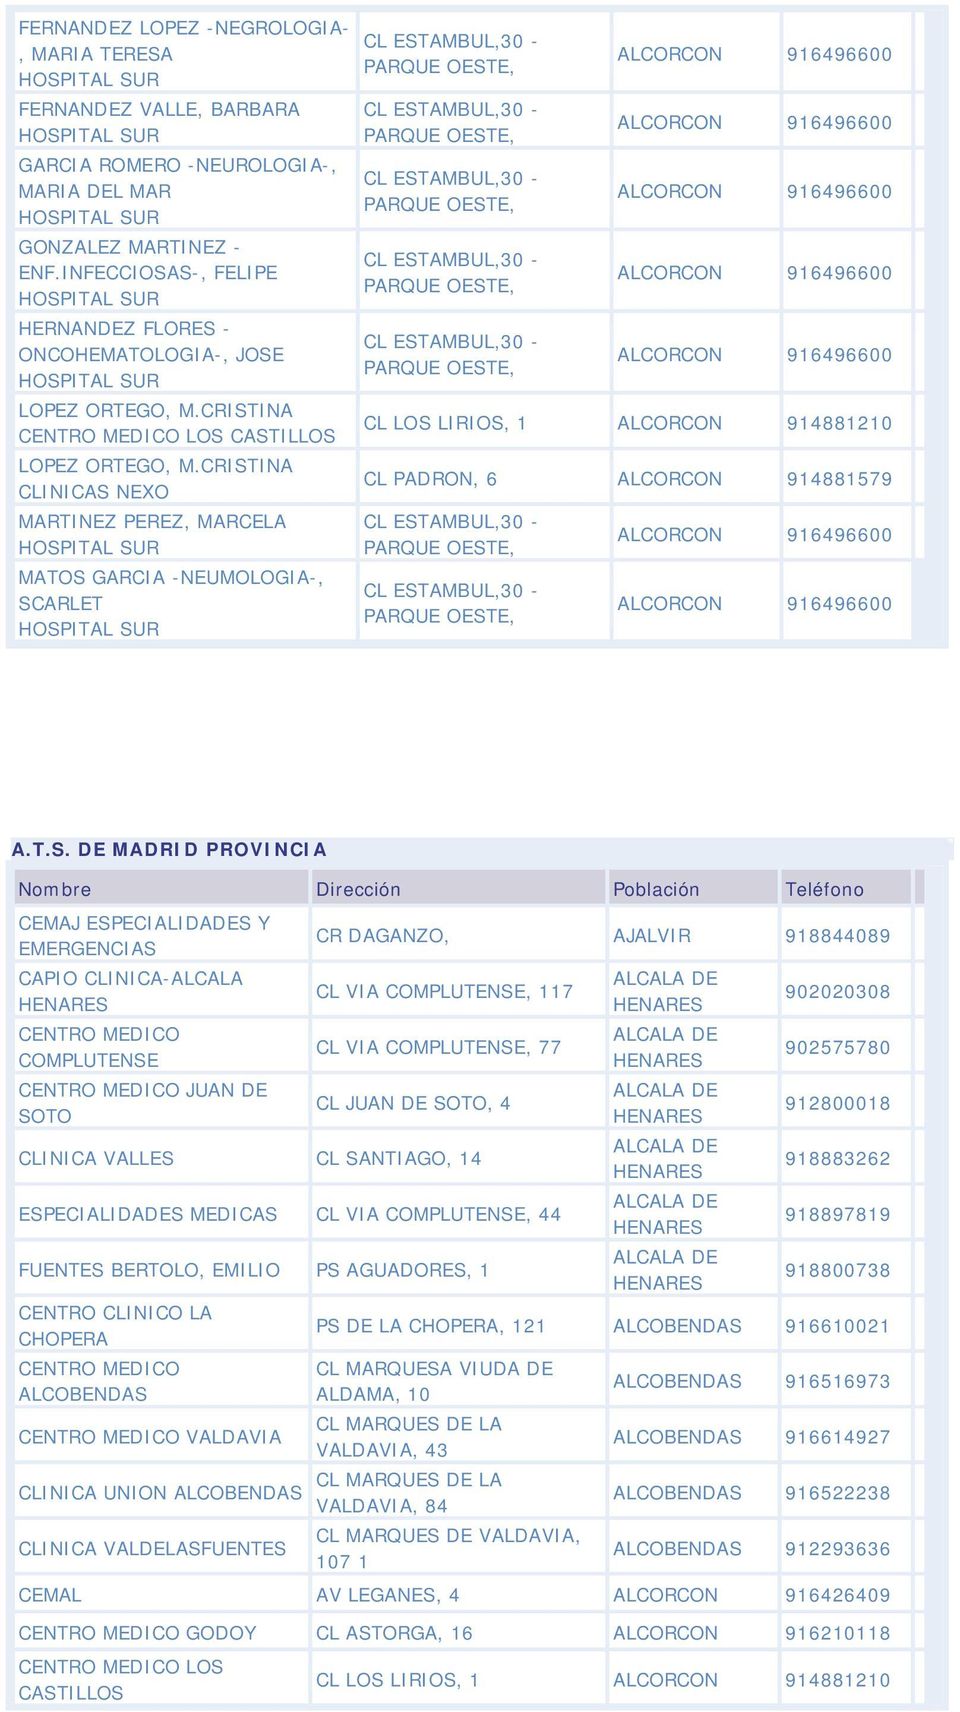 CRISTINA CLINICAS NEXO MARTINEZ PEREZ, MARCELA MATOS GARCIA -NEUMOLOGIA-, SCARLET CL LOS LIRIOS, 1 ALCORCON 914881210 CL PADRON, 6 ALCORCON 914881579 A.T.S. DE MADRID PROVINCIA CEMAJ ESPECIALIDADES Y